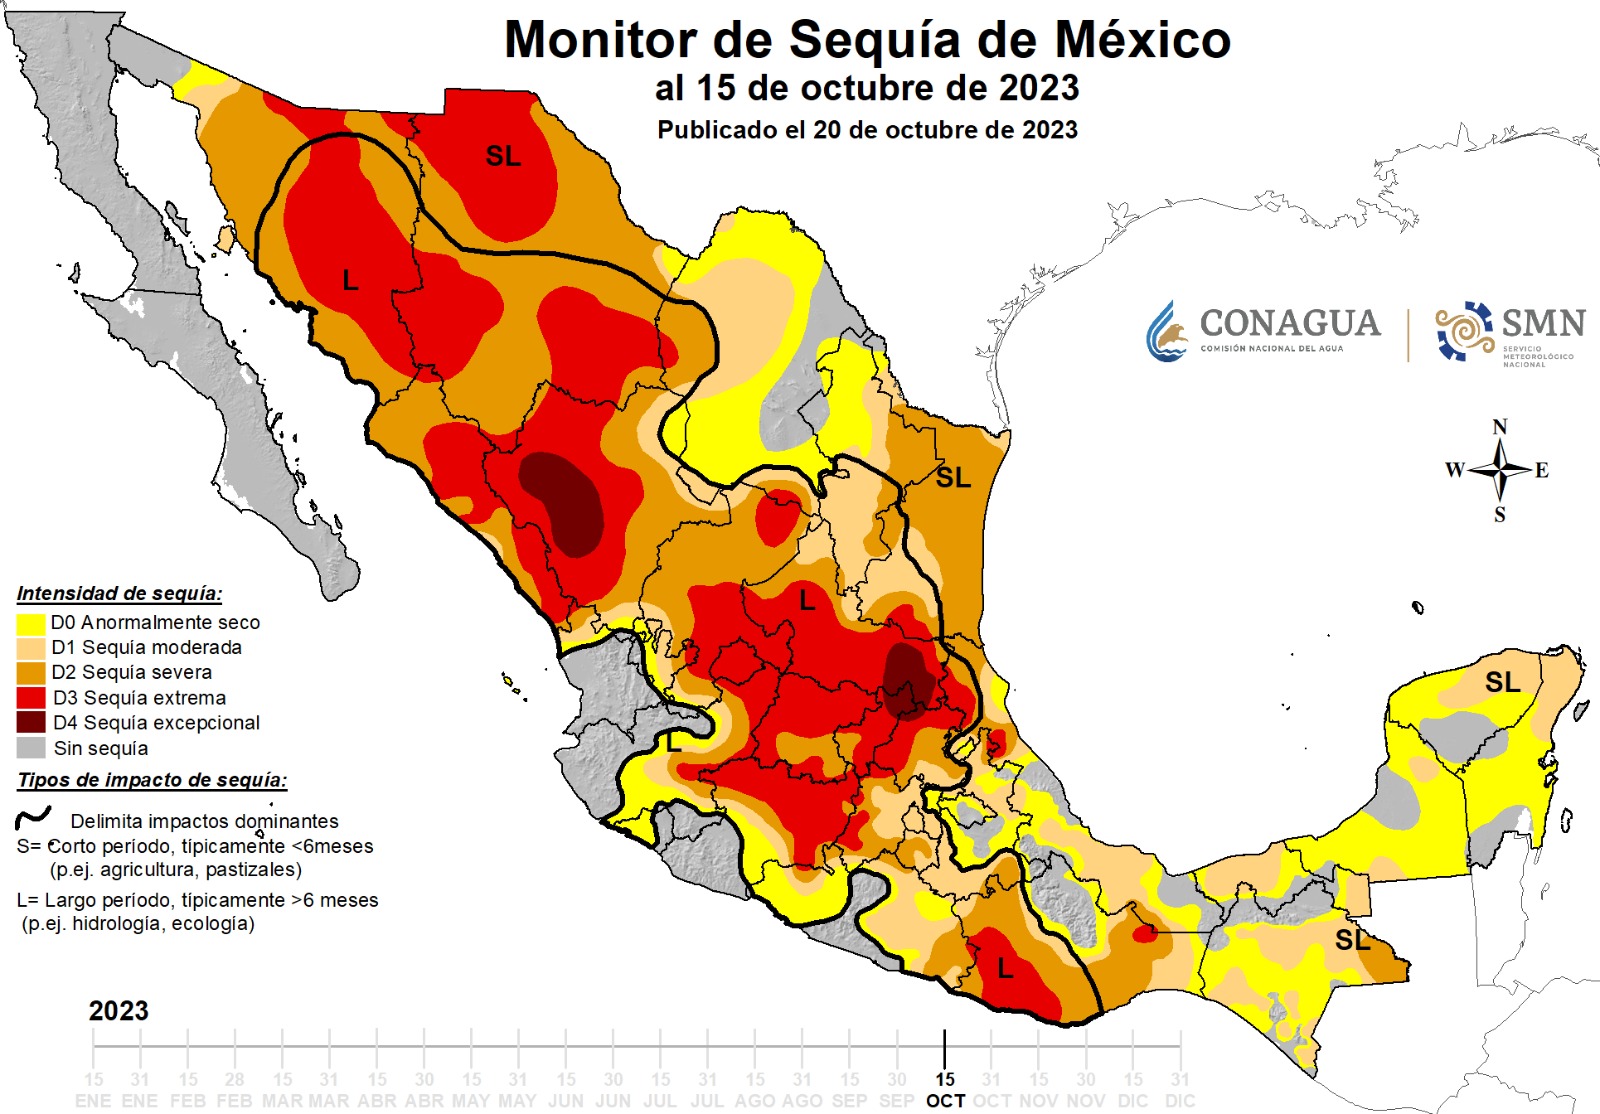 Los 58 municipios de San Luis Potosí están enfrentando algún grado de sequía, prevaleciendo los indicadores de sequía moderada